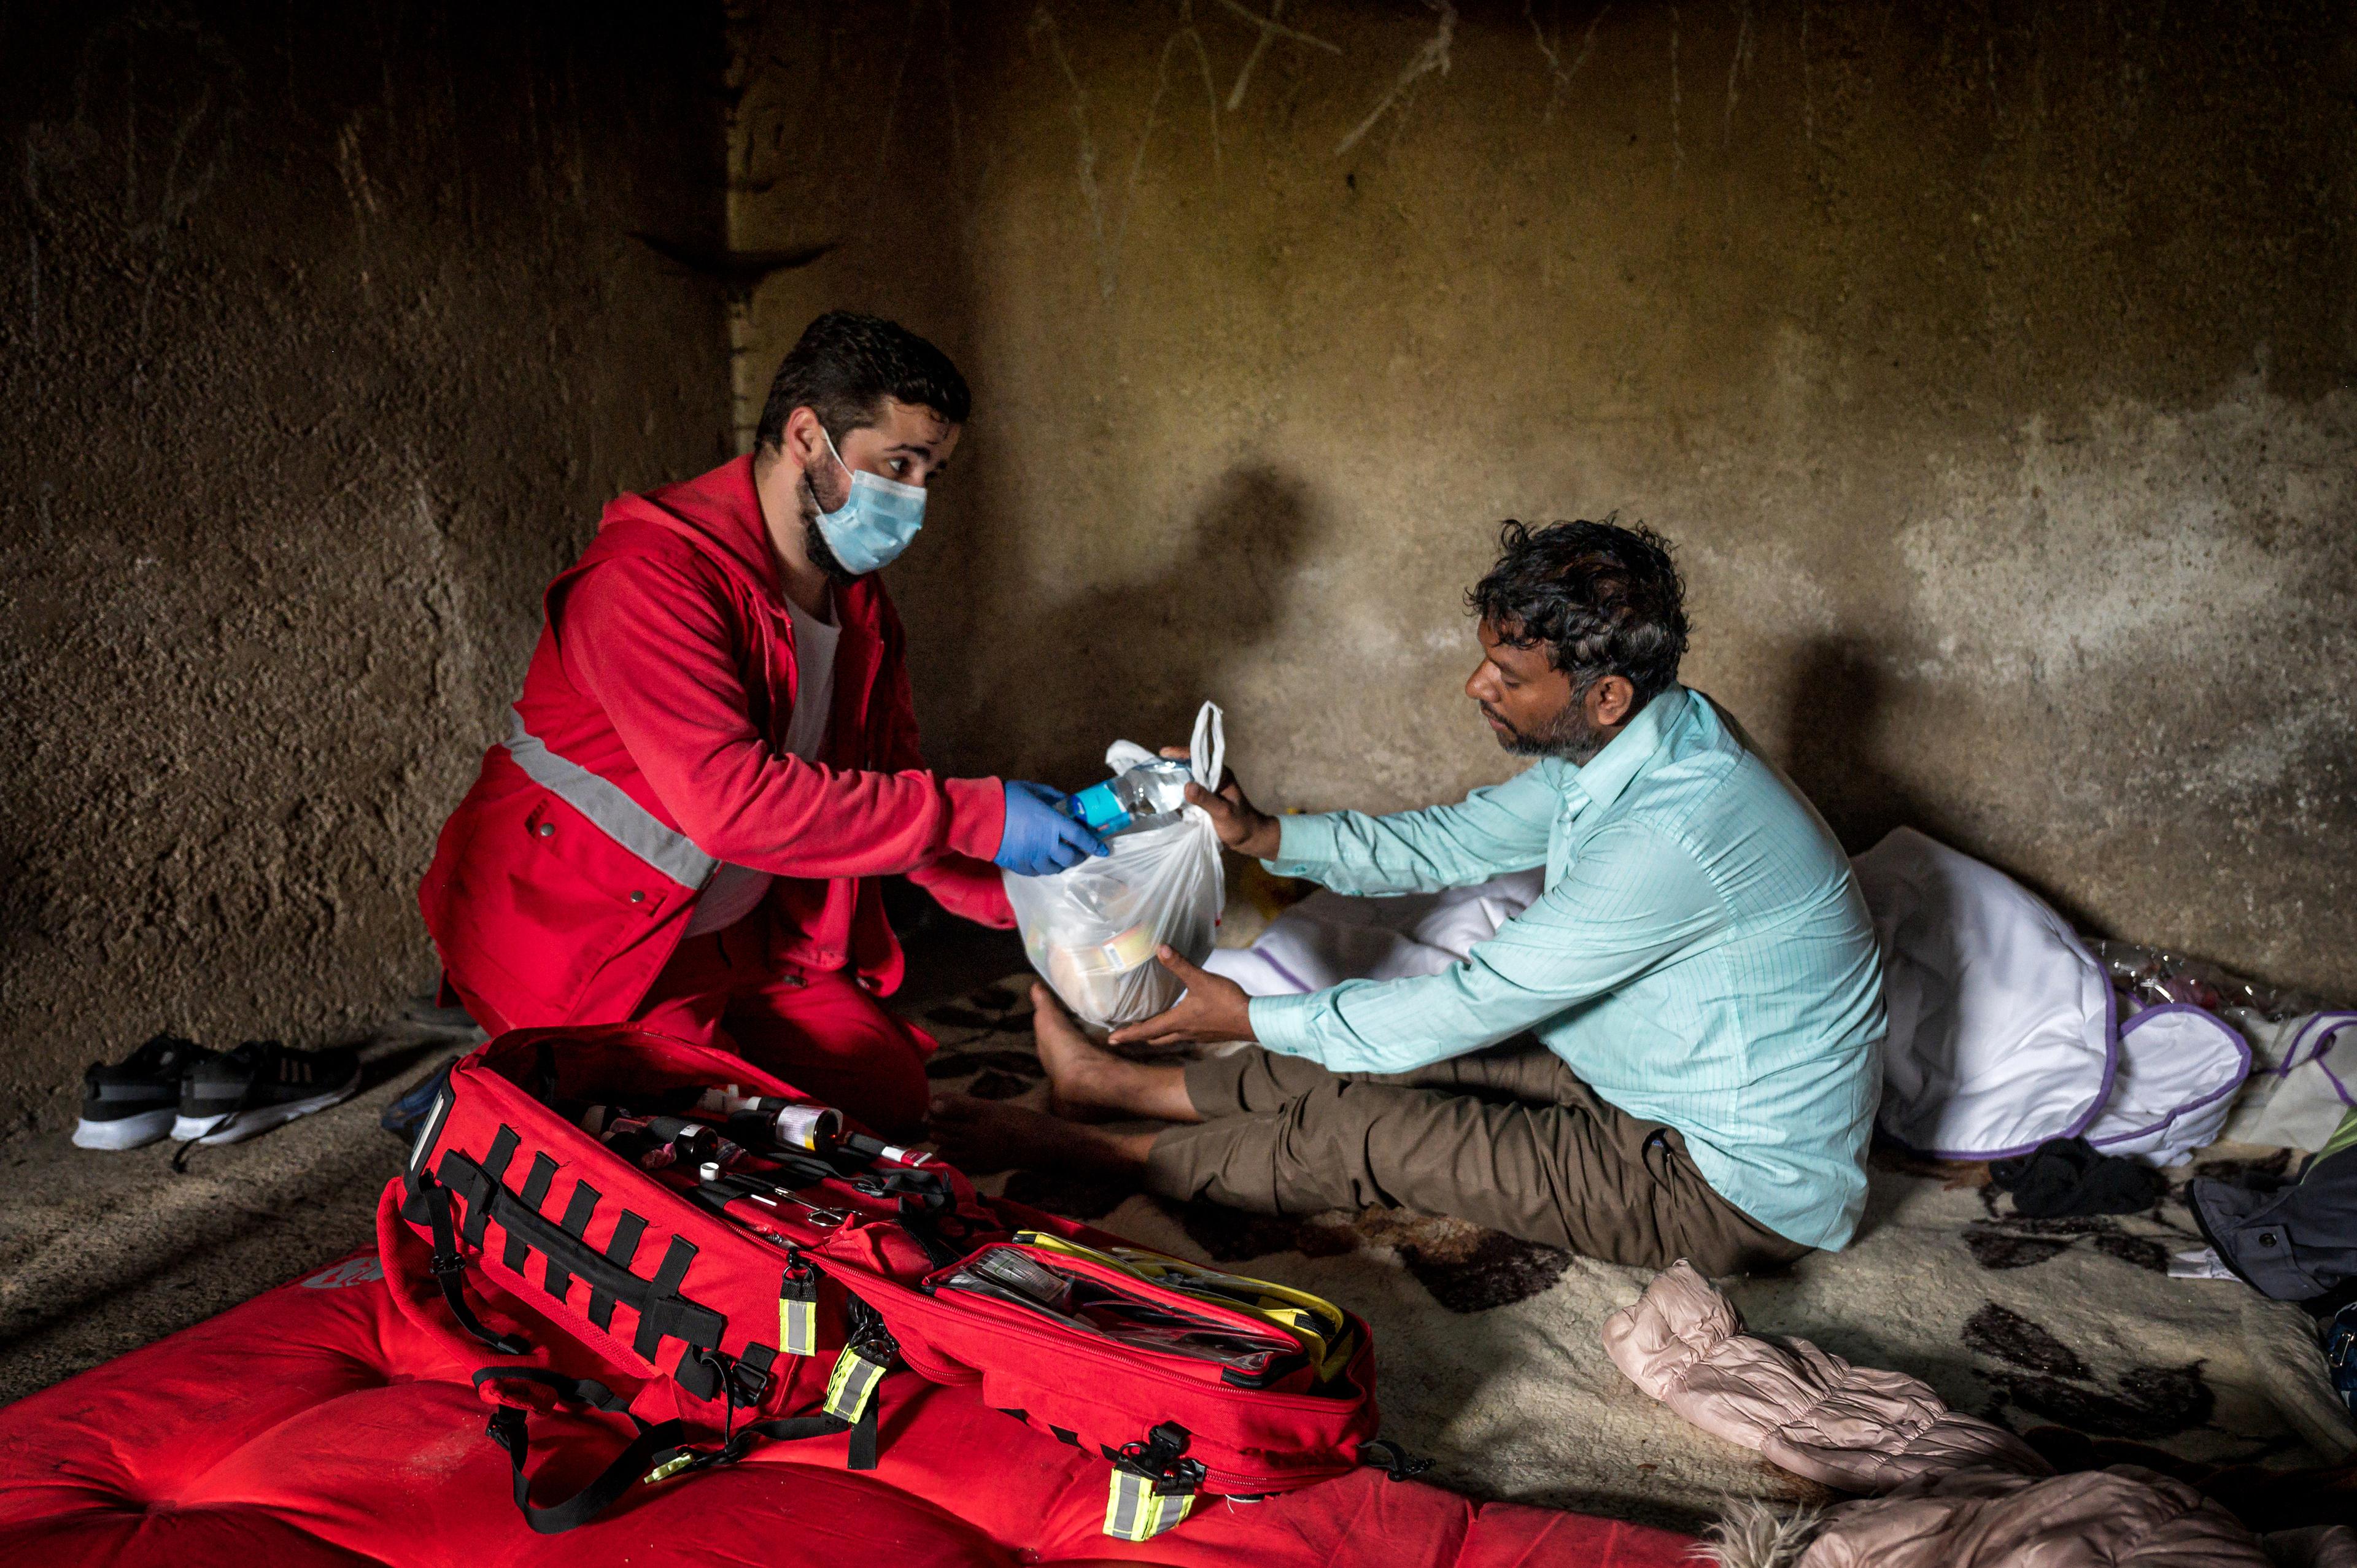 L'image montre un employé du mouvement de la Croix-Rouge en uniforme rouge, remettant des fournitures à un homme assis dans une pièce peu meublée, illustrant une opération sur le terrain ou un contexte d'assistance humanitaire.